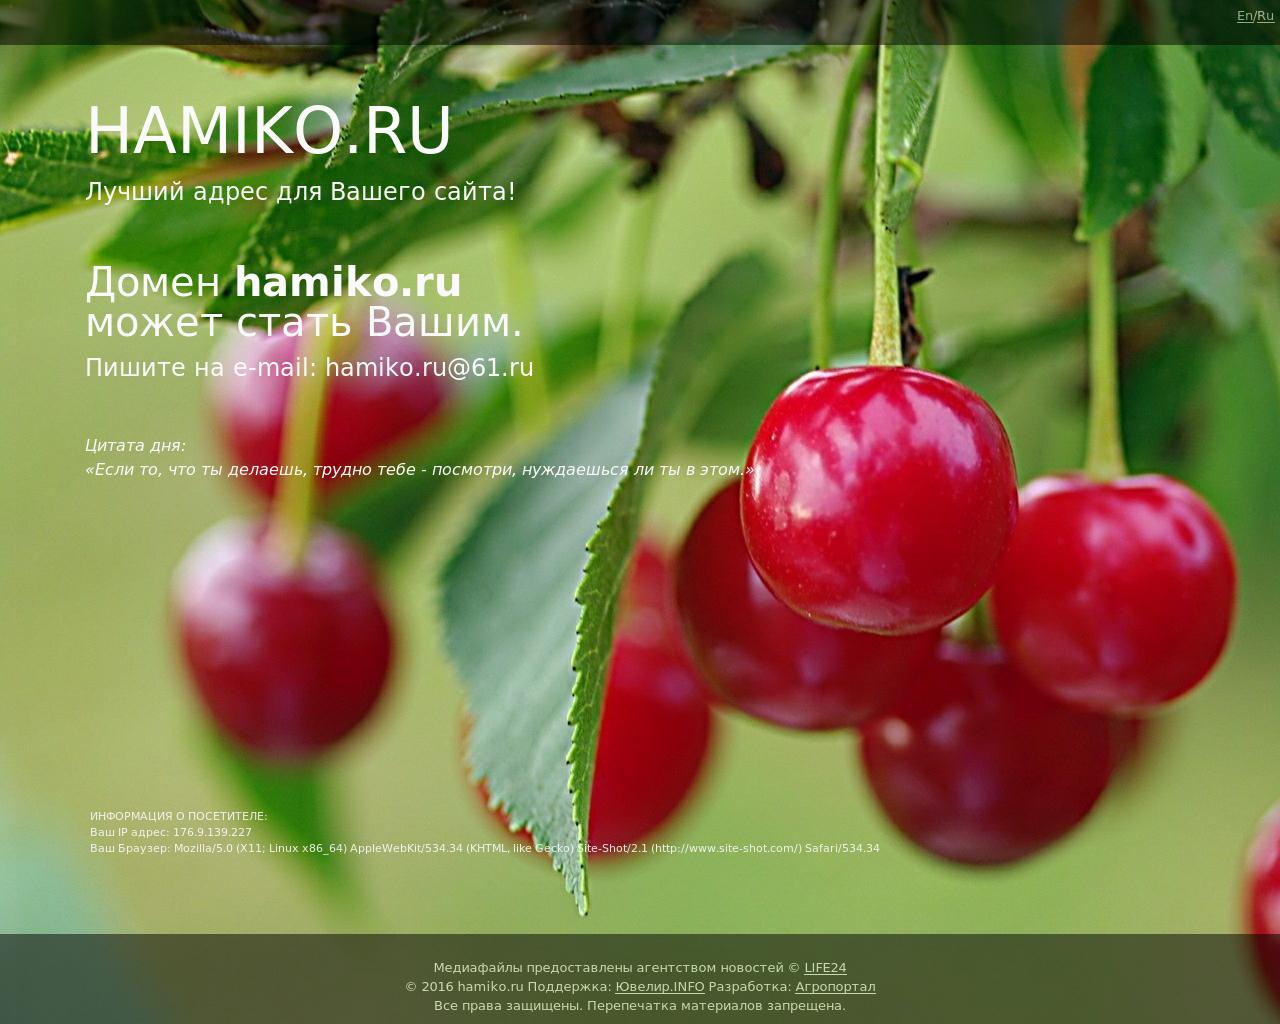 Изображение сайта hamiko.ru в разрешении 1280x1024